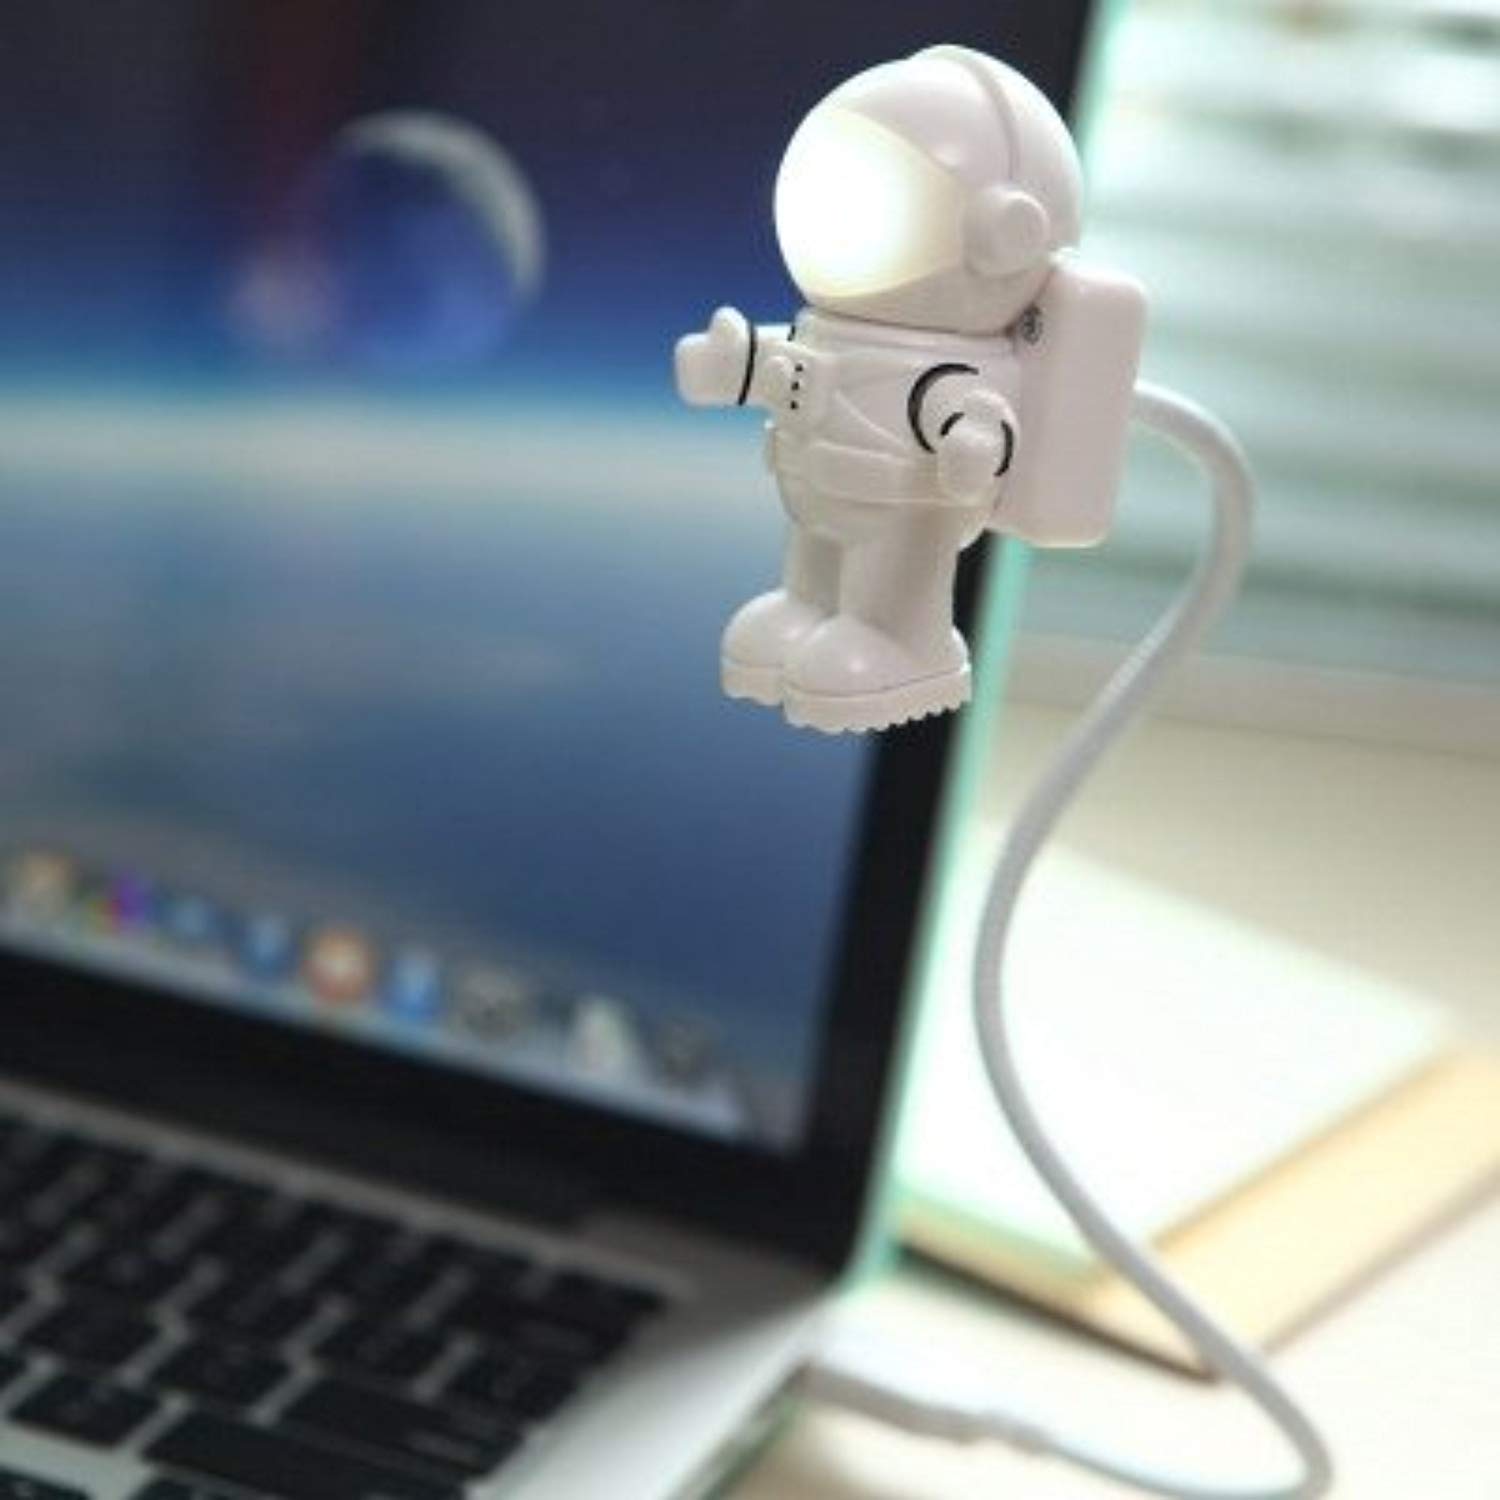  USB лампа для ноутбука, LED светильник и ночник Astro-Light .